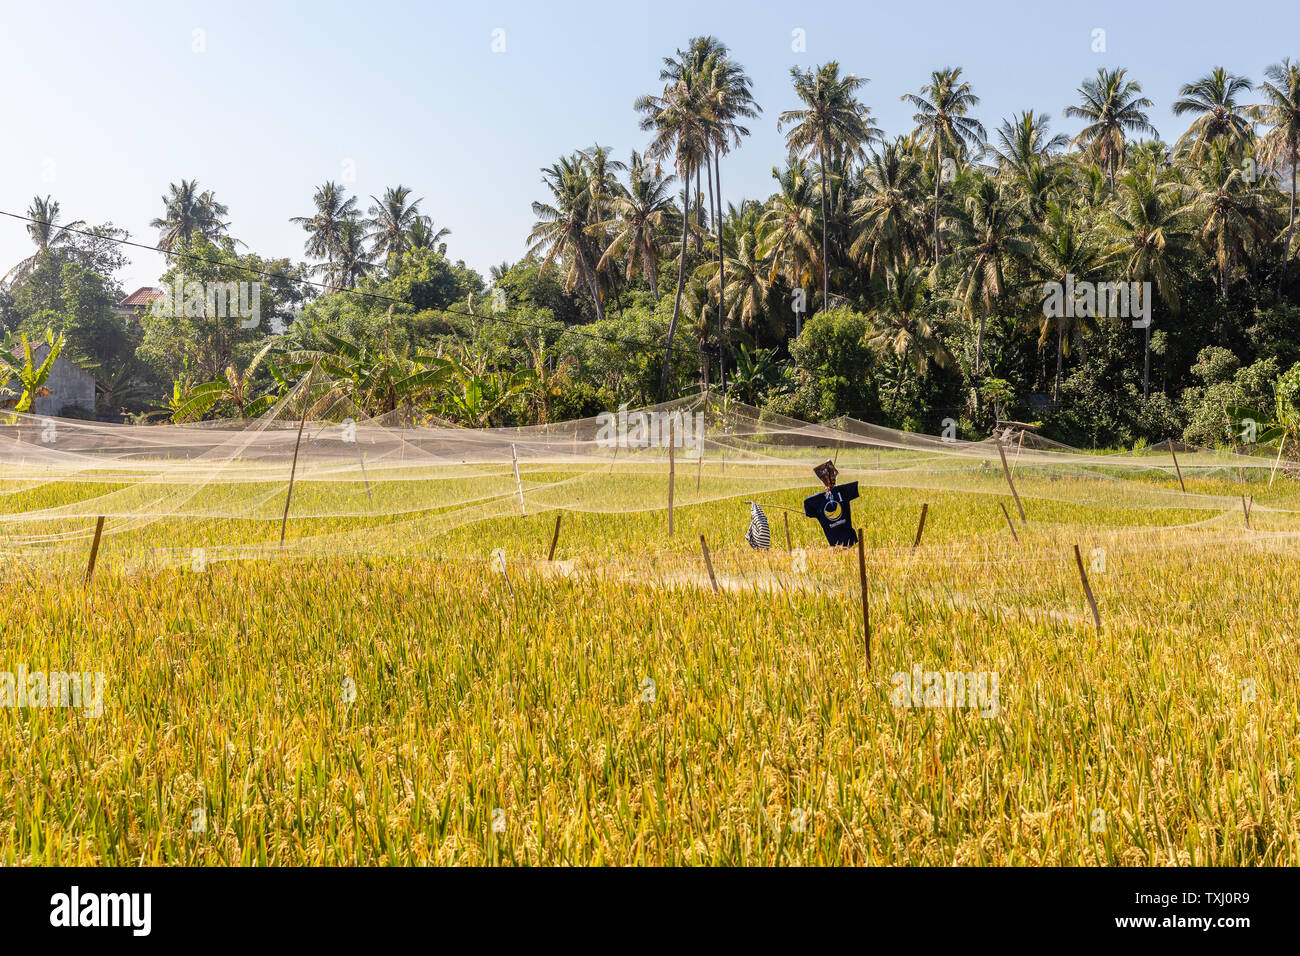 Ländliche balinesischen Landschaft mit Reisfeldern und einen Schrecken Krähe. Amed, Karangasem, in Bali, Indonesien Stockfoto